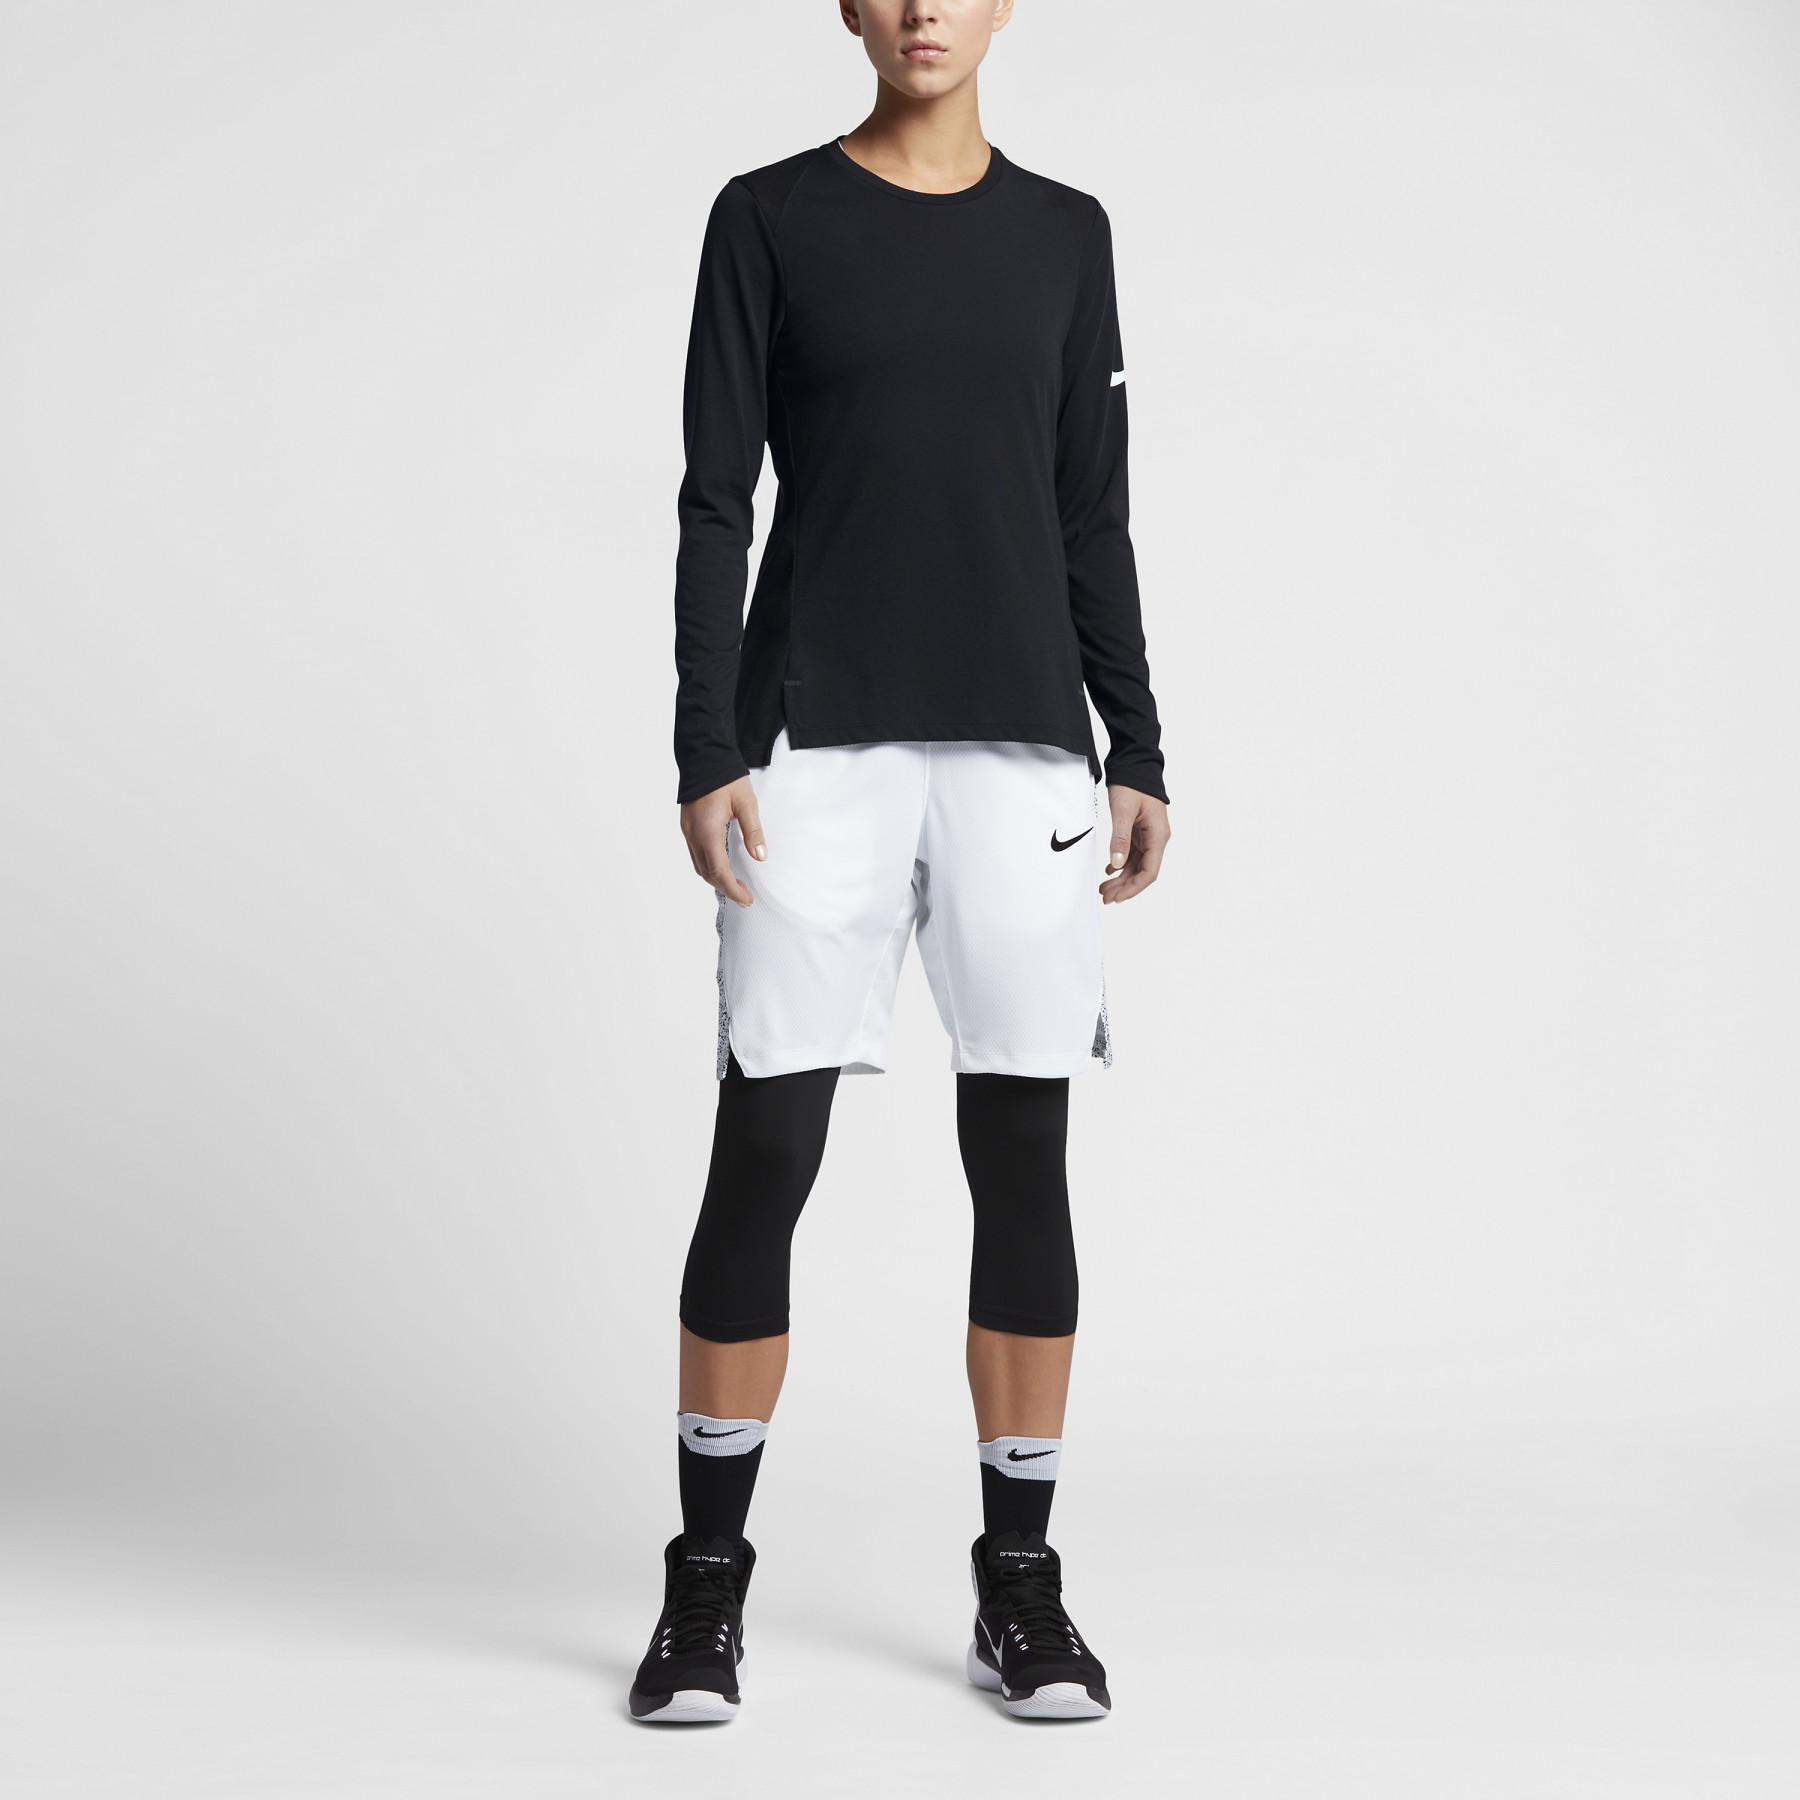 Women's long sleeve jersey Nike Dry Elite